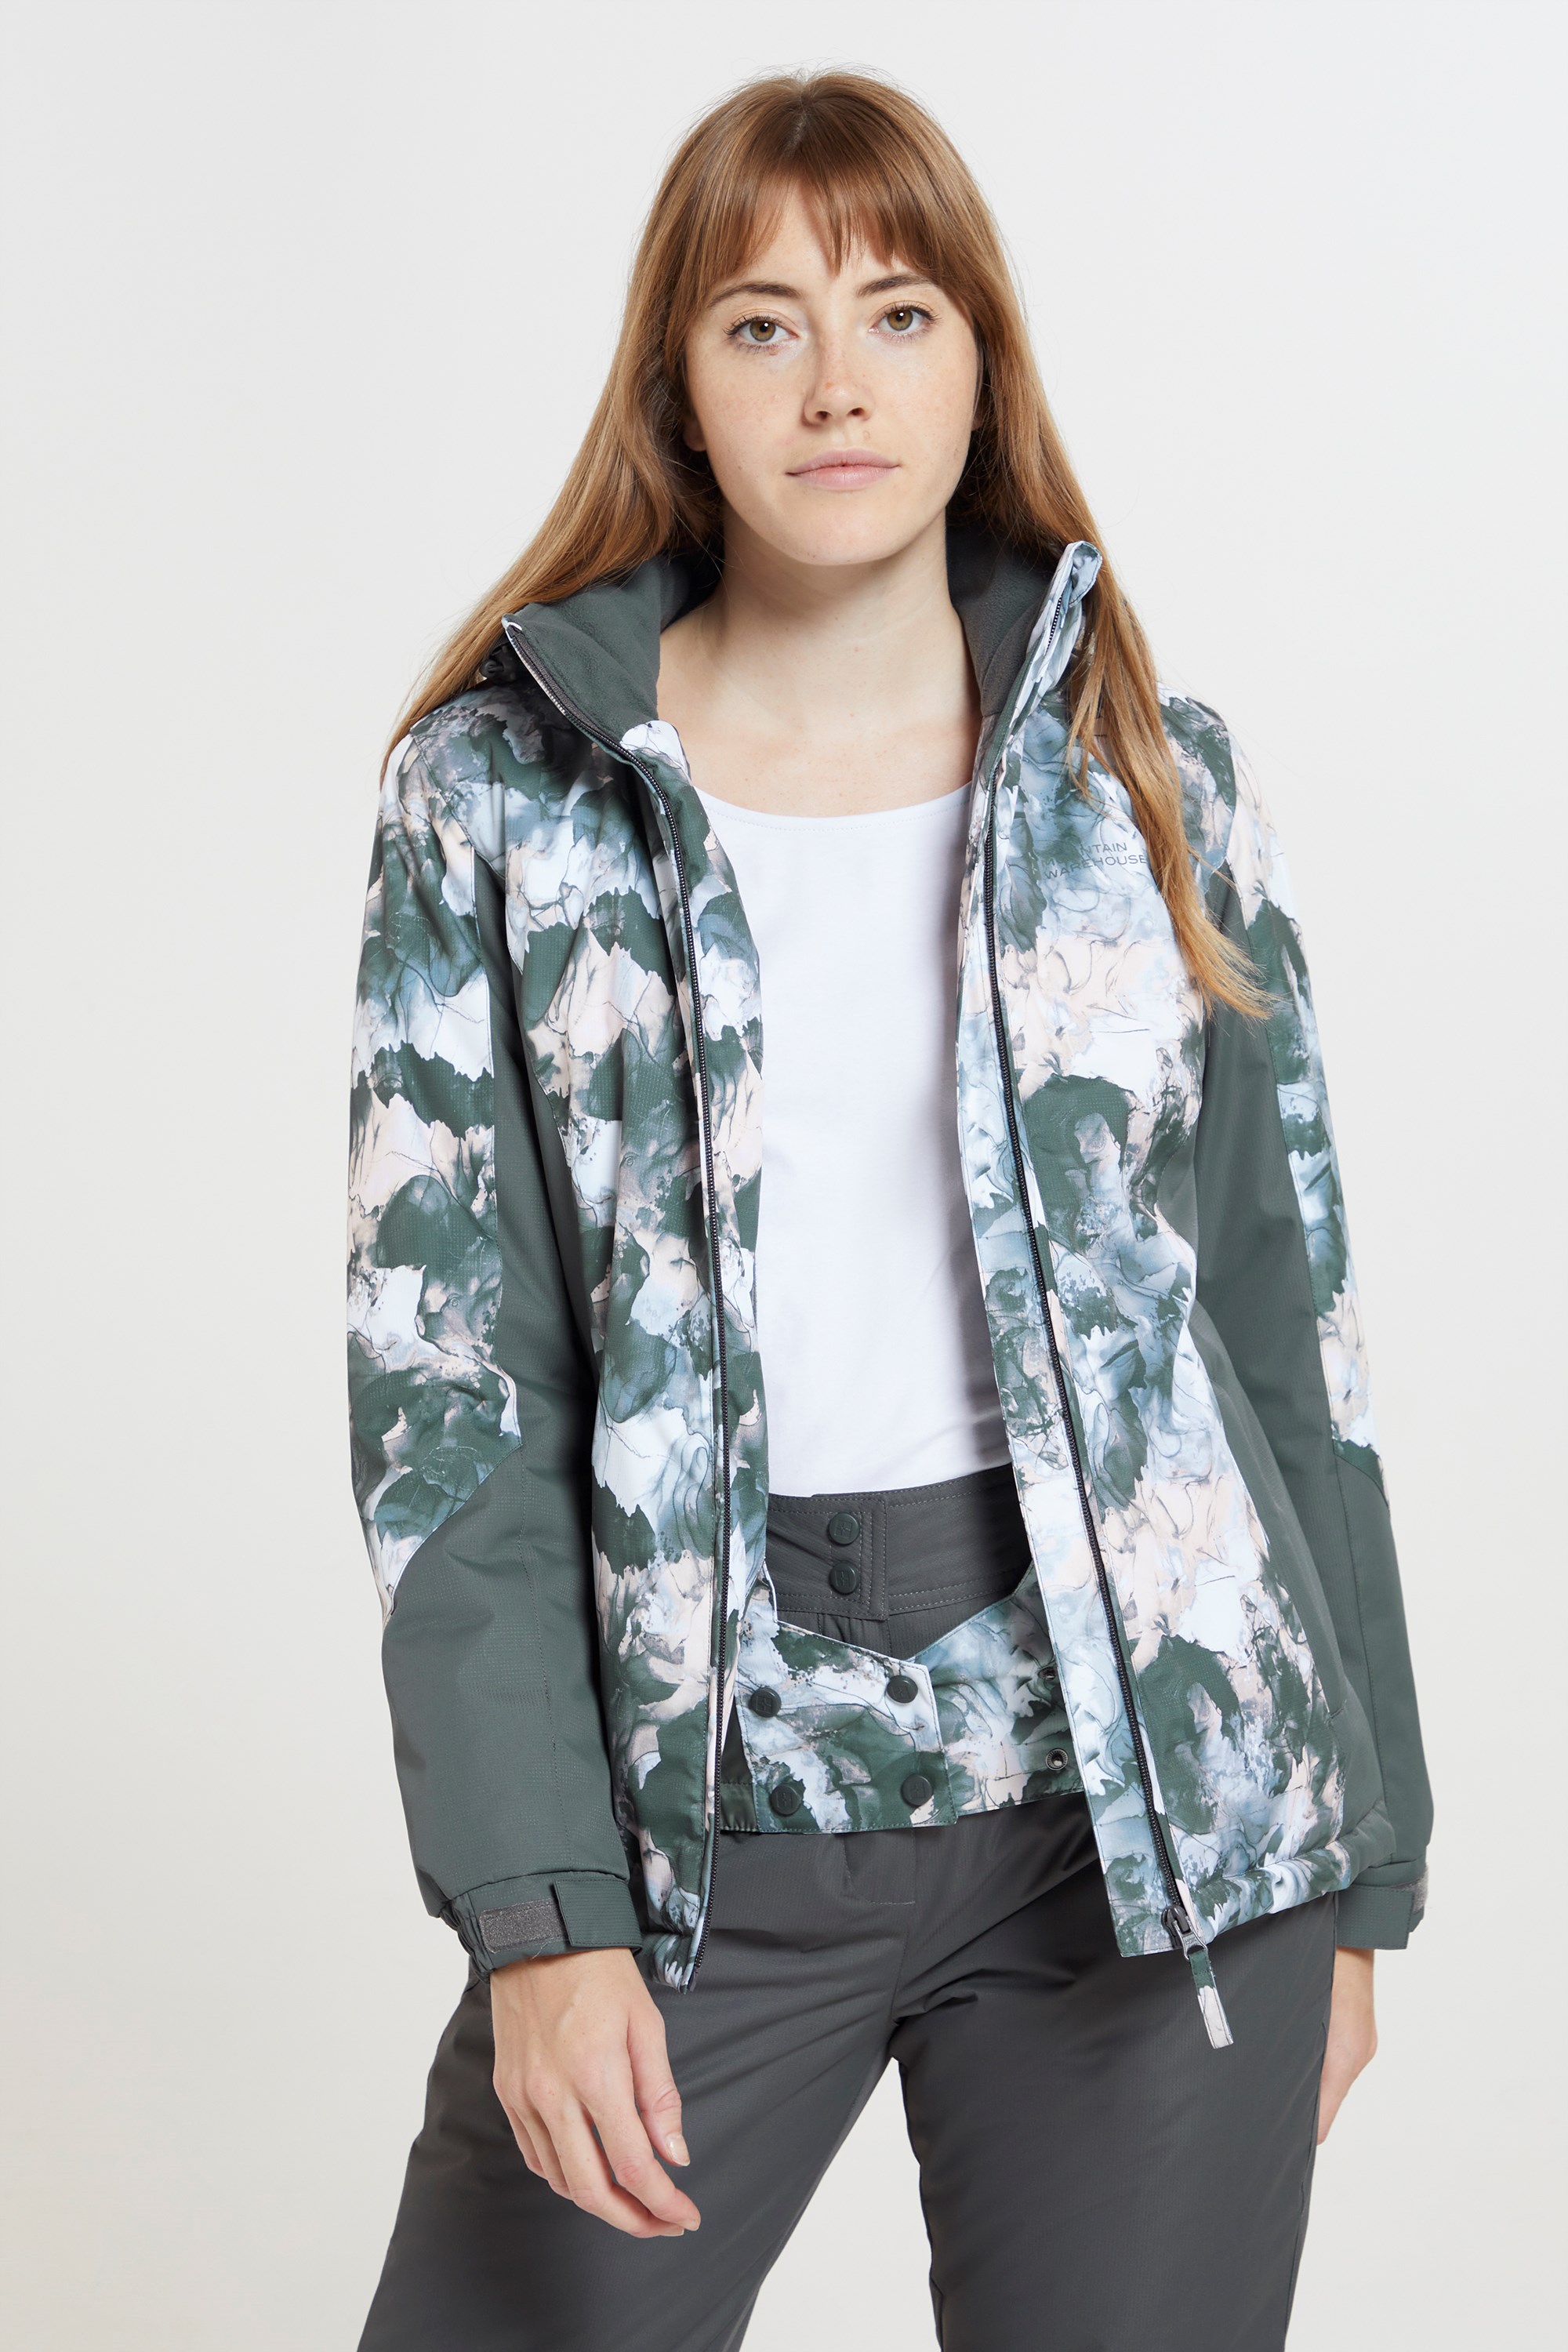 Mountain Warehouse Verbier Extreme Womens Ski Jacket - Grey | Size 6